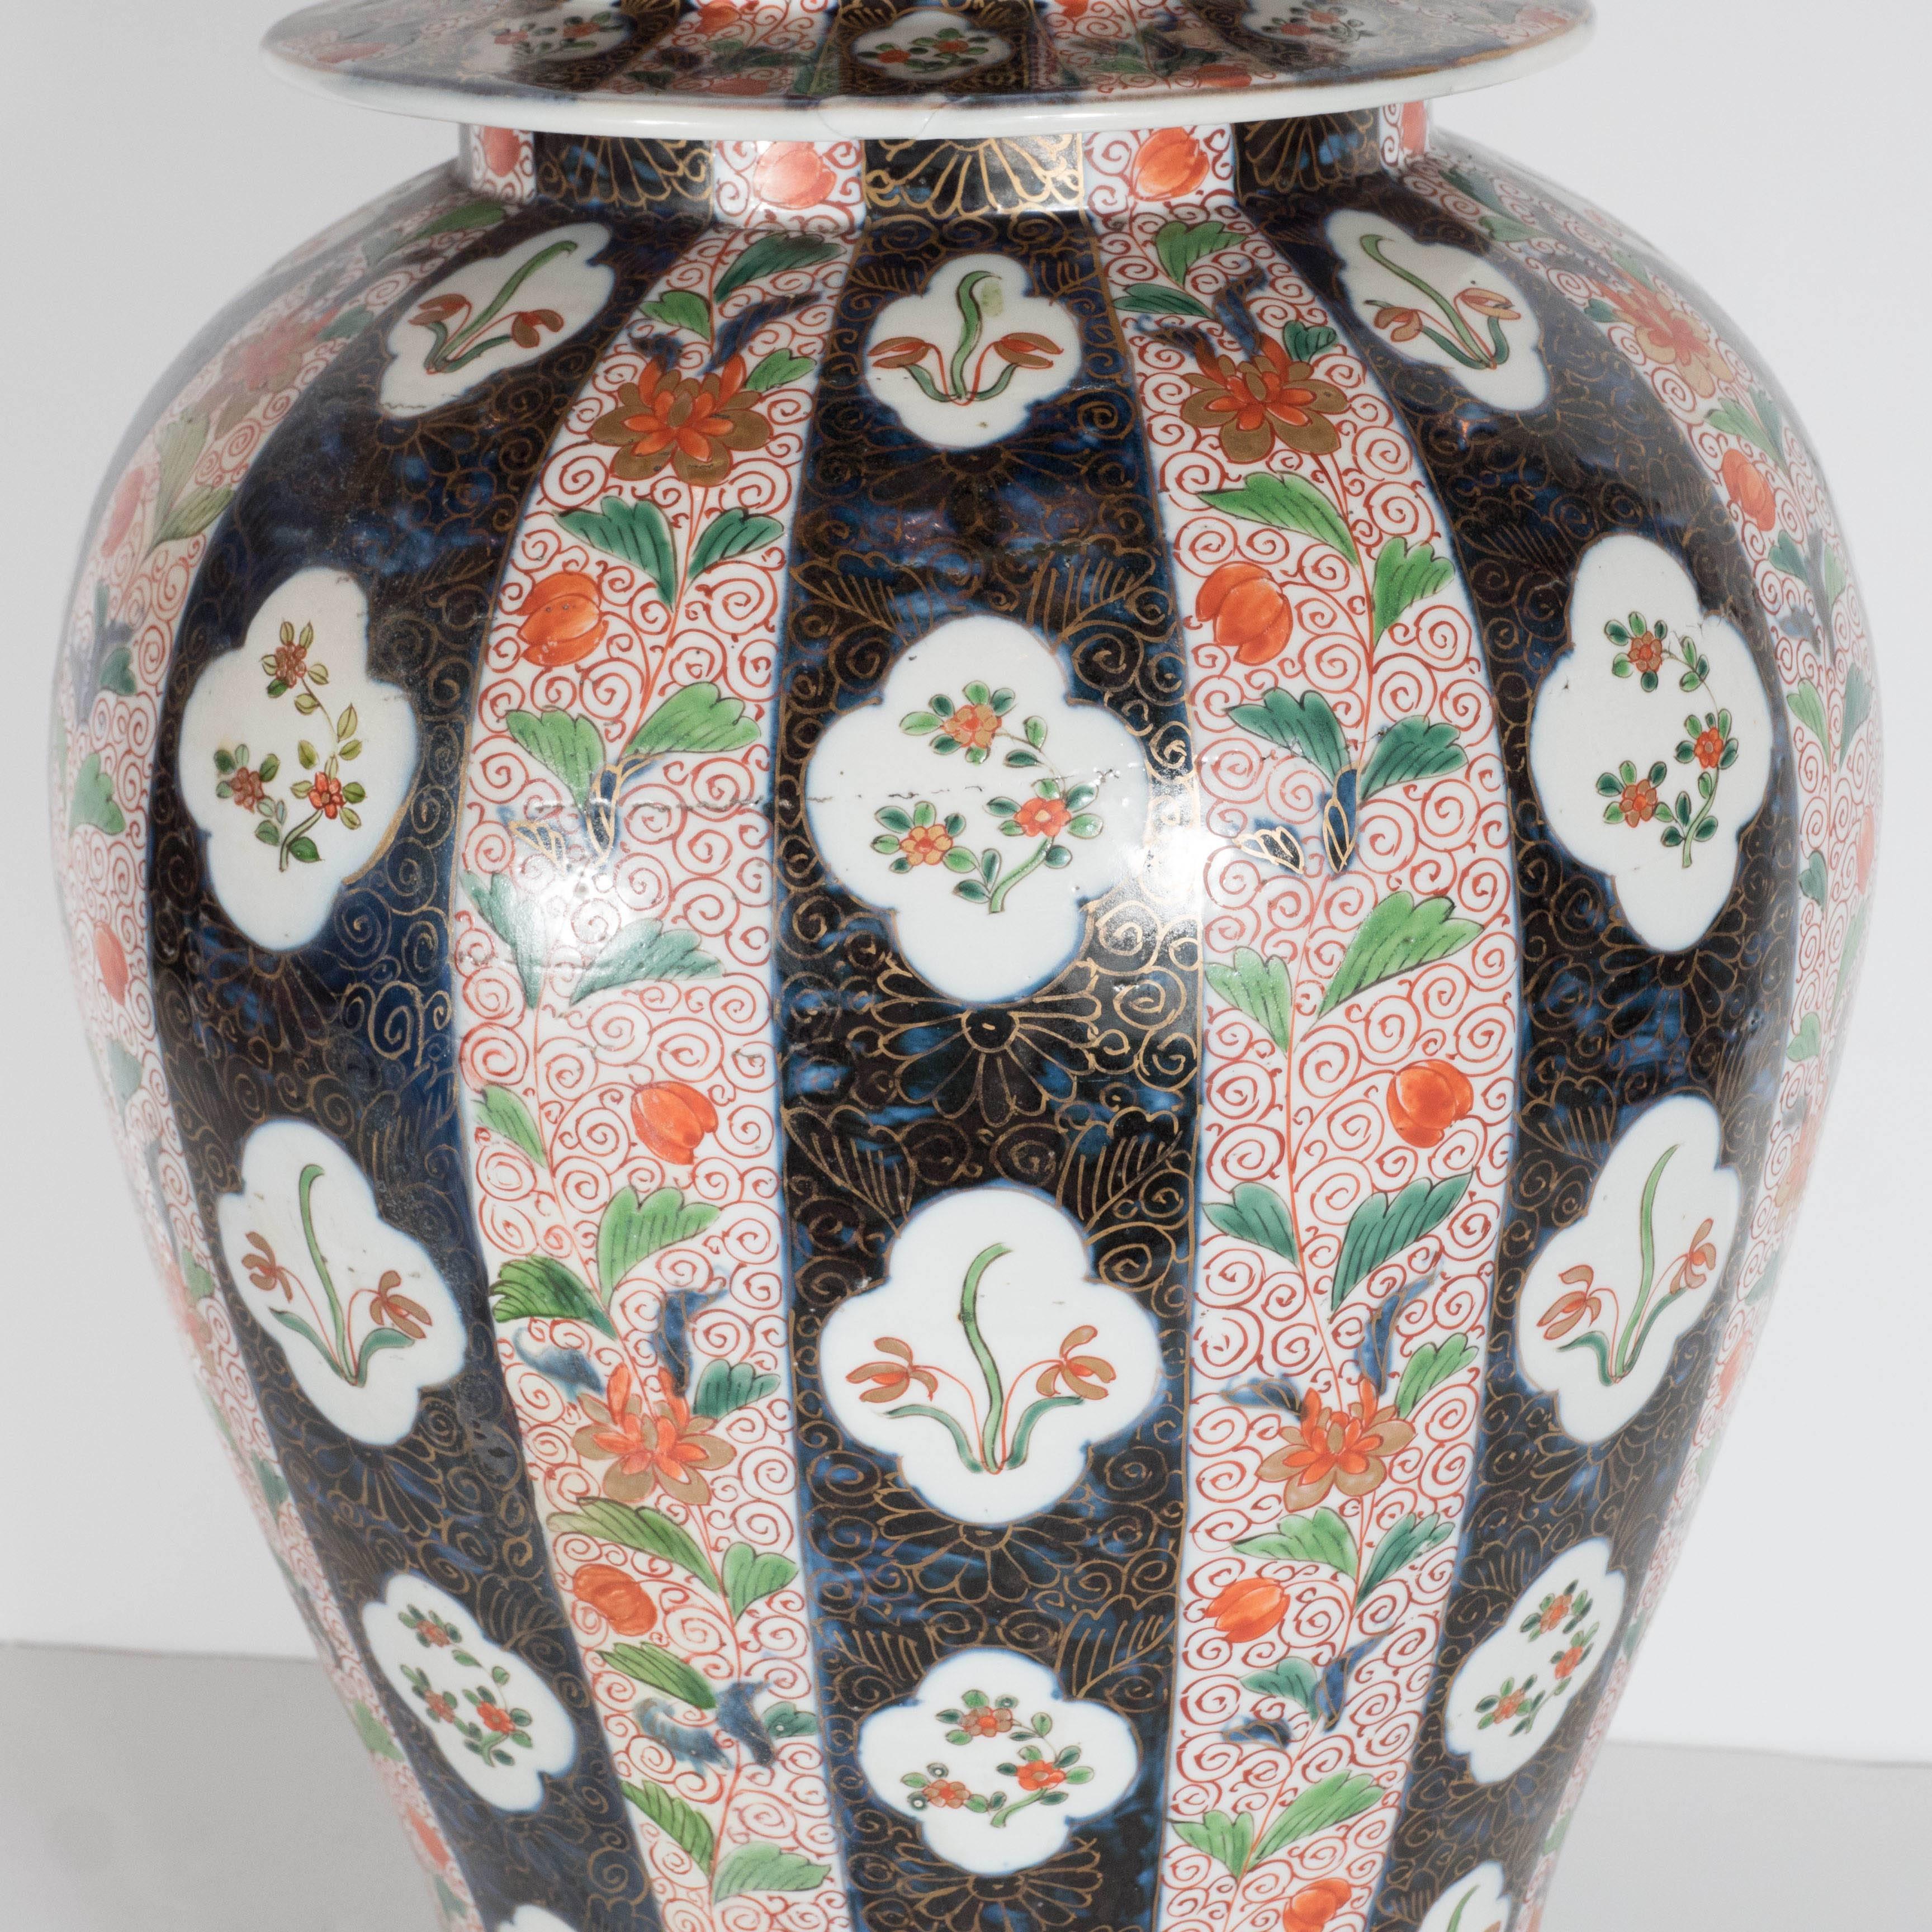 Large-Scale Antique Chinese Porcelain Famille Verte Lidded Vases / Urns 2